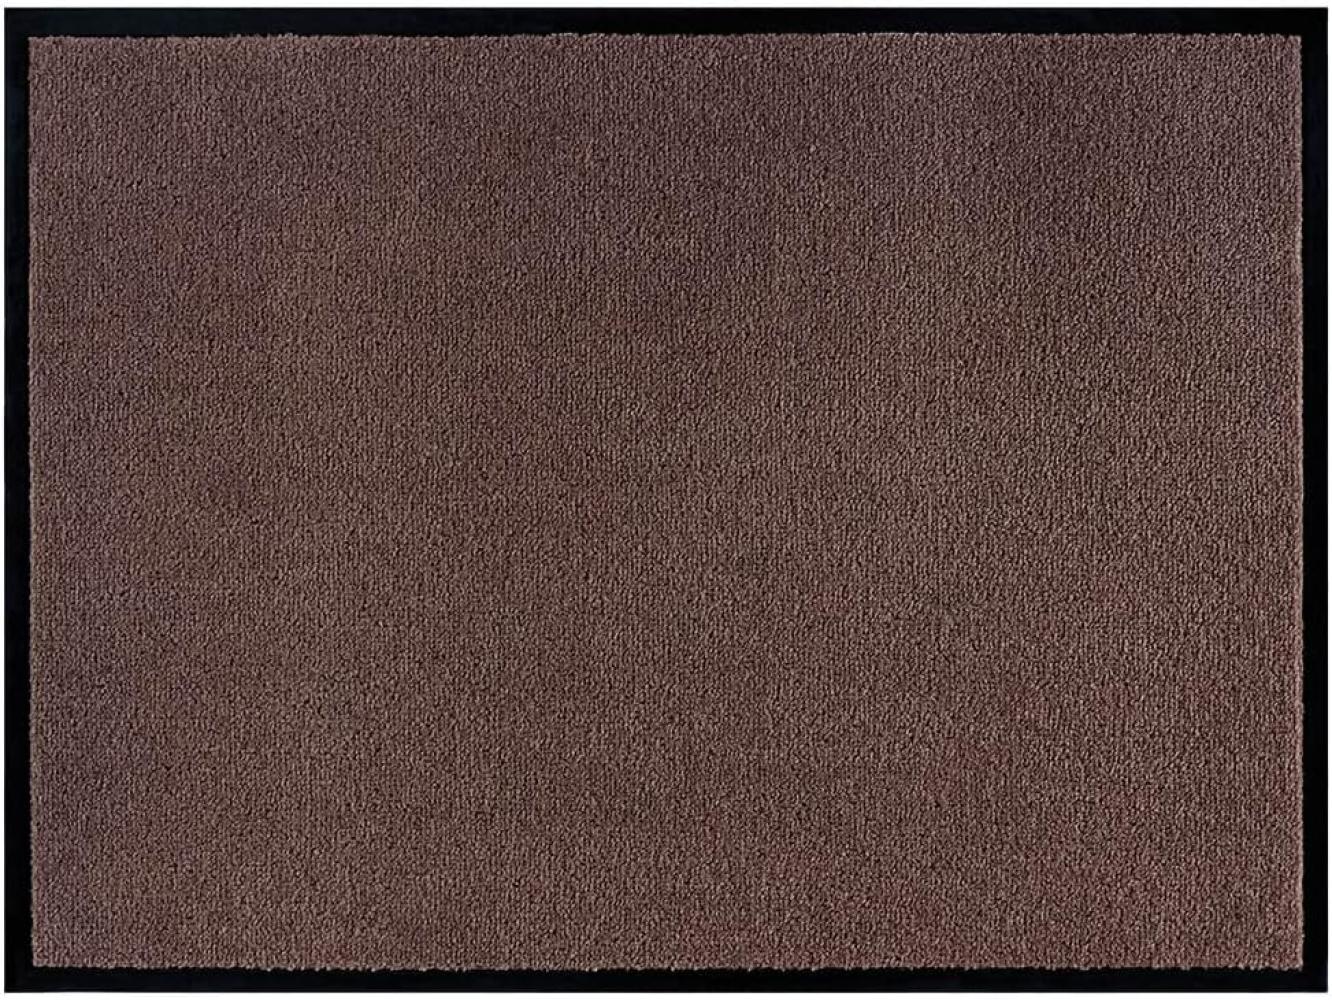 Teppich Boss waschbare In- & Outdoor Fußmatte Uni einfarbig - braun - 90x150x0,7cm Bild 1